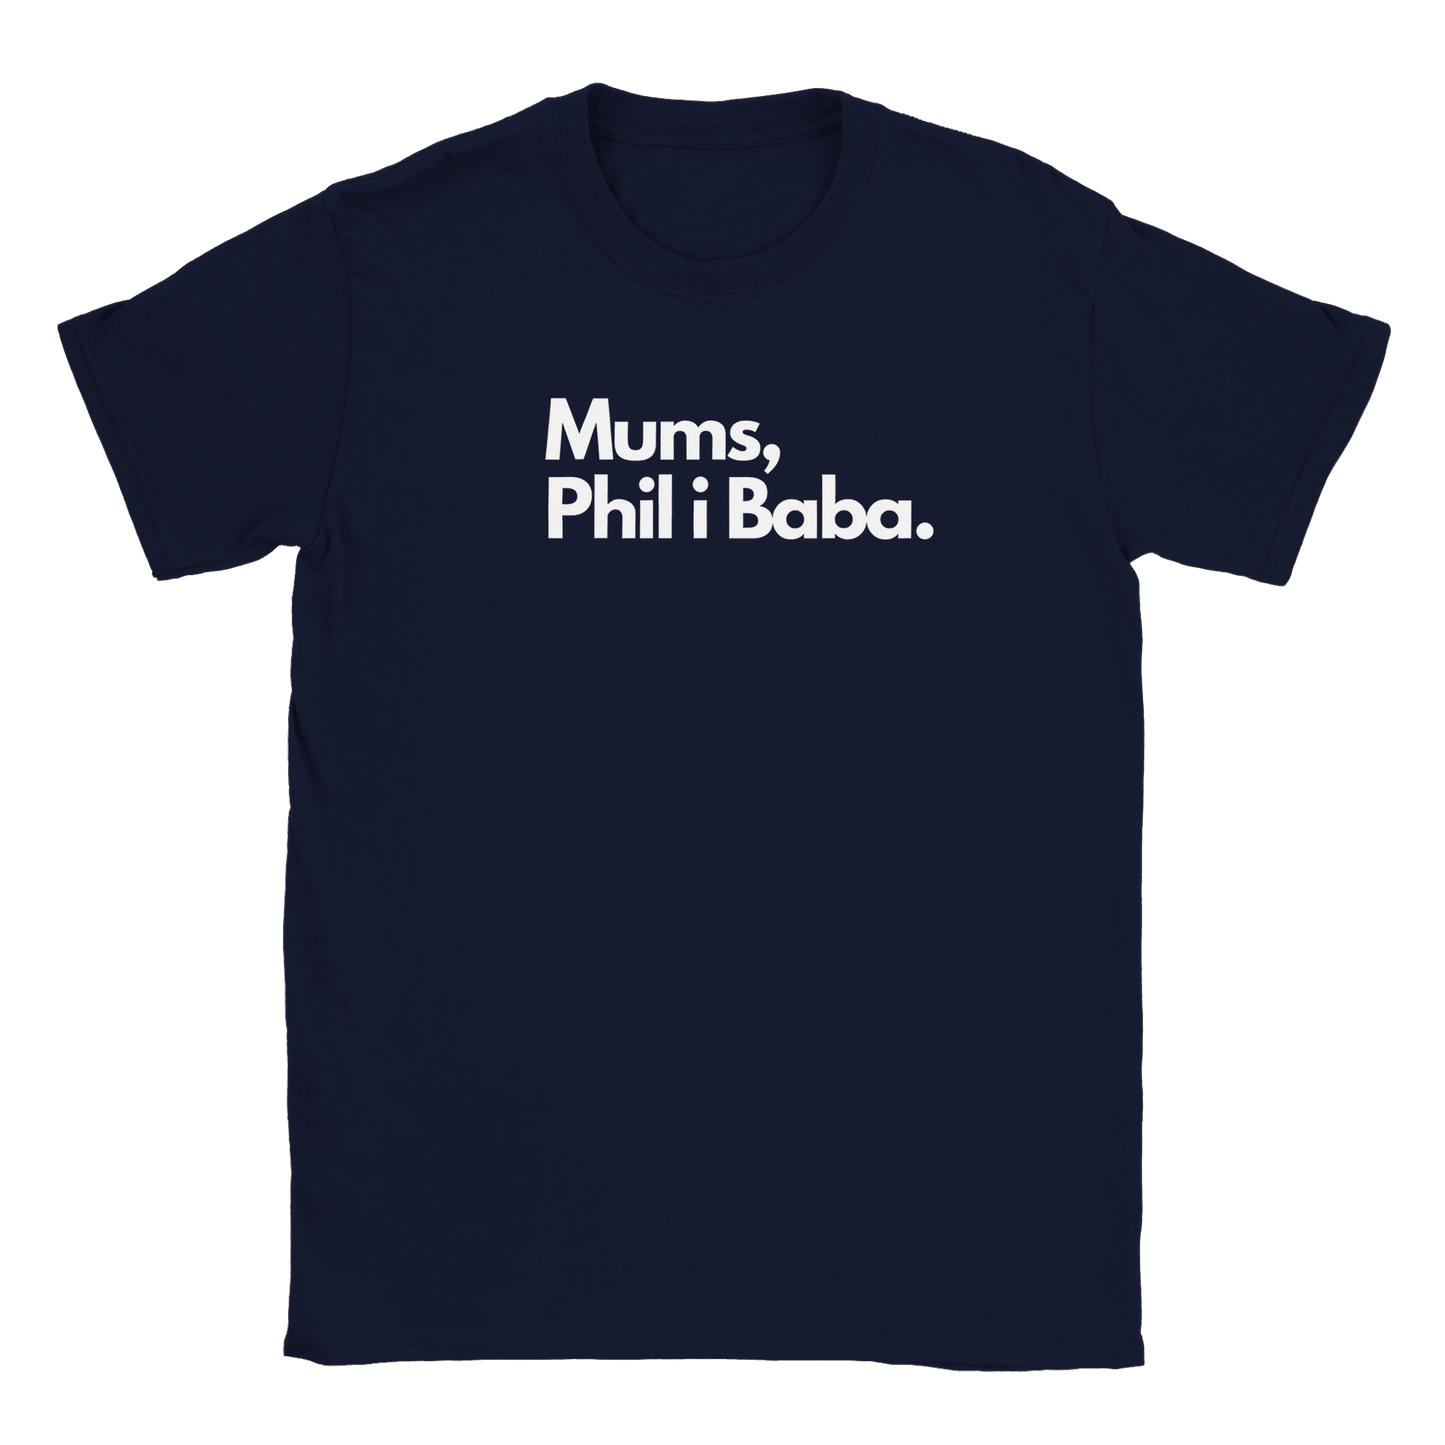 Mumsfilibabba - T-shirt Navy